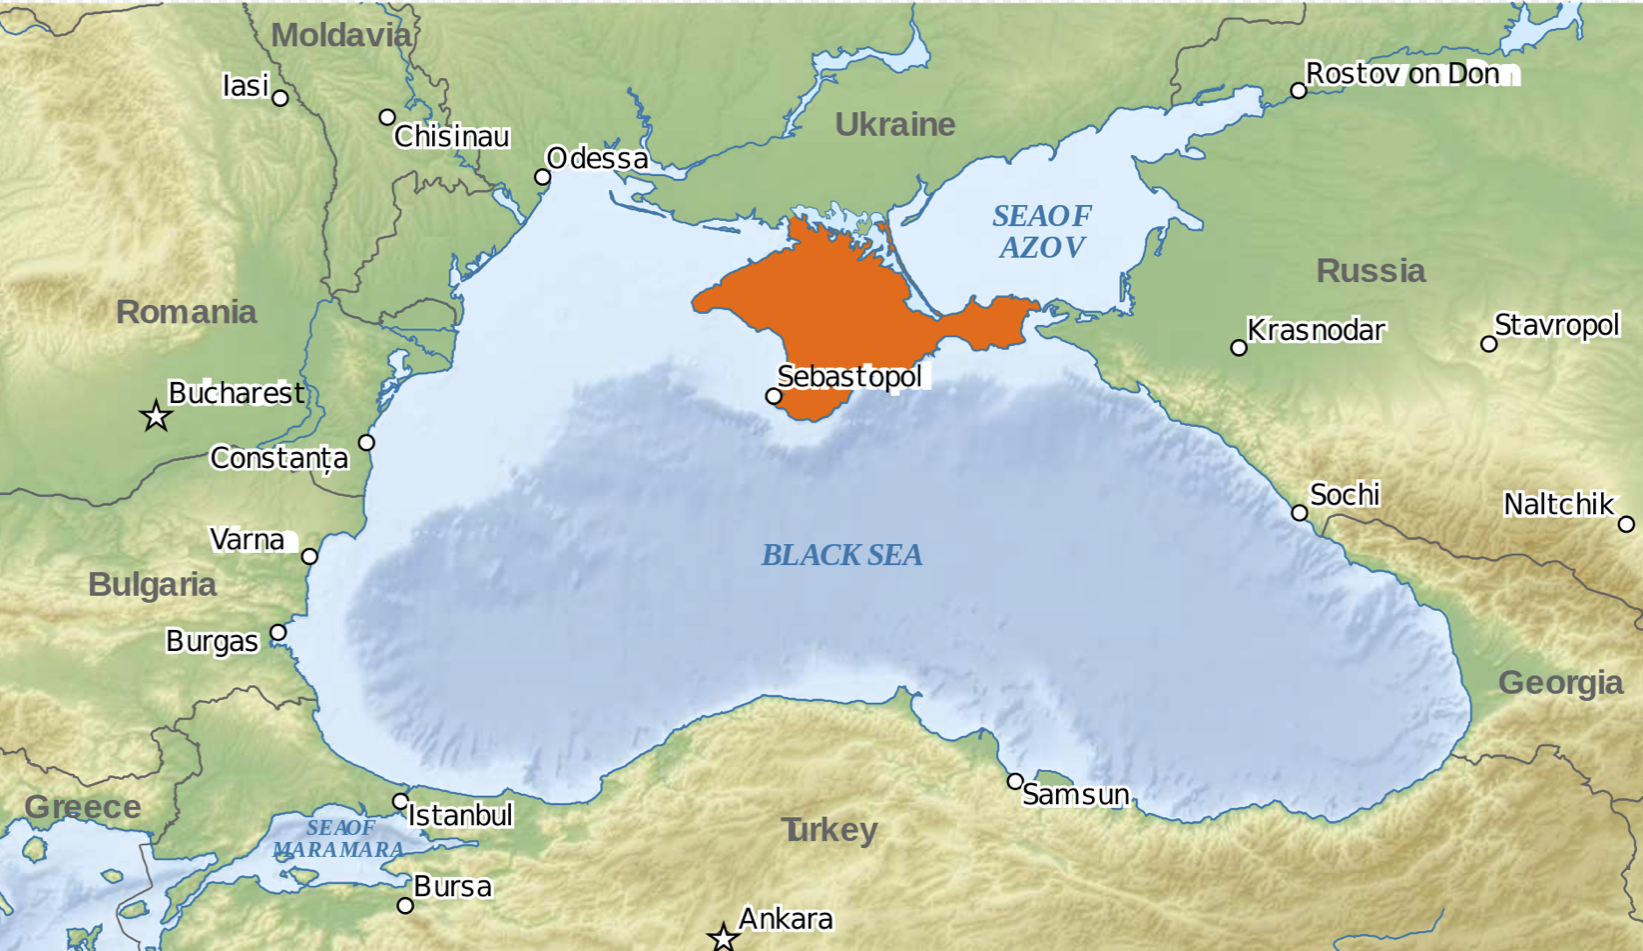 Krim Karte.1.svg